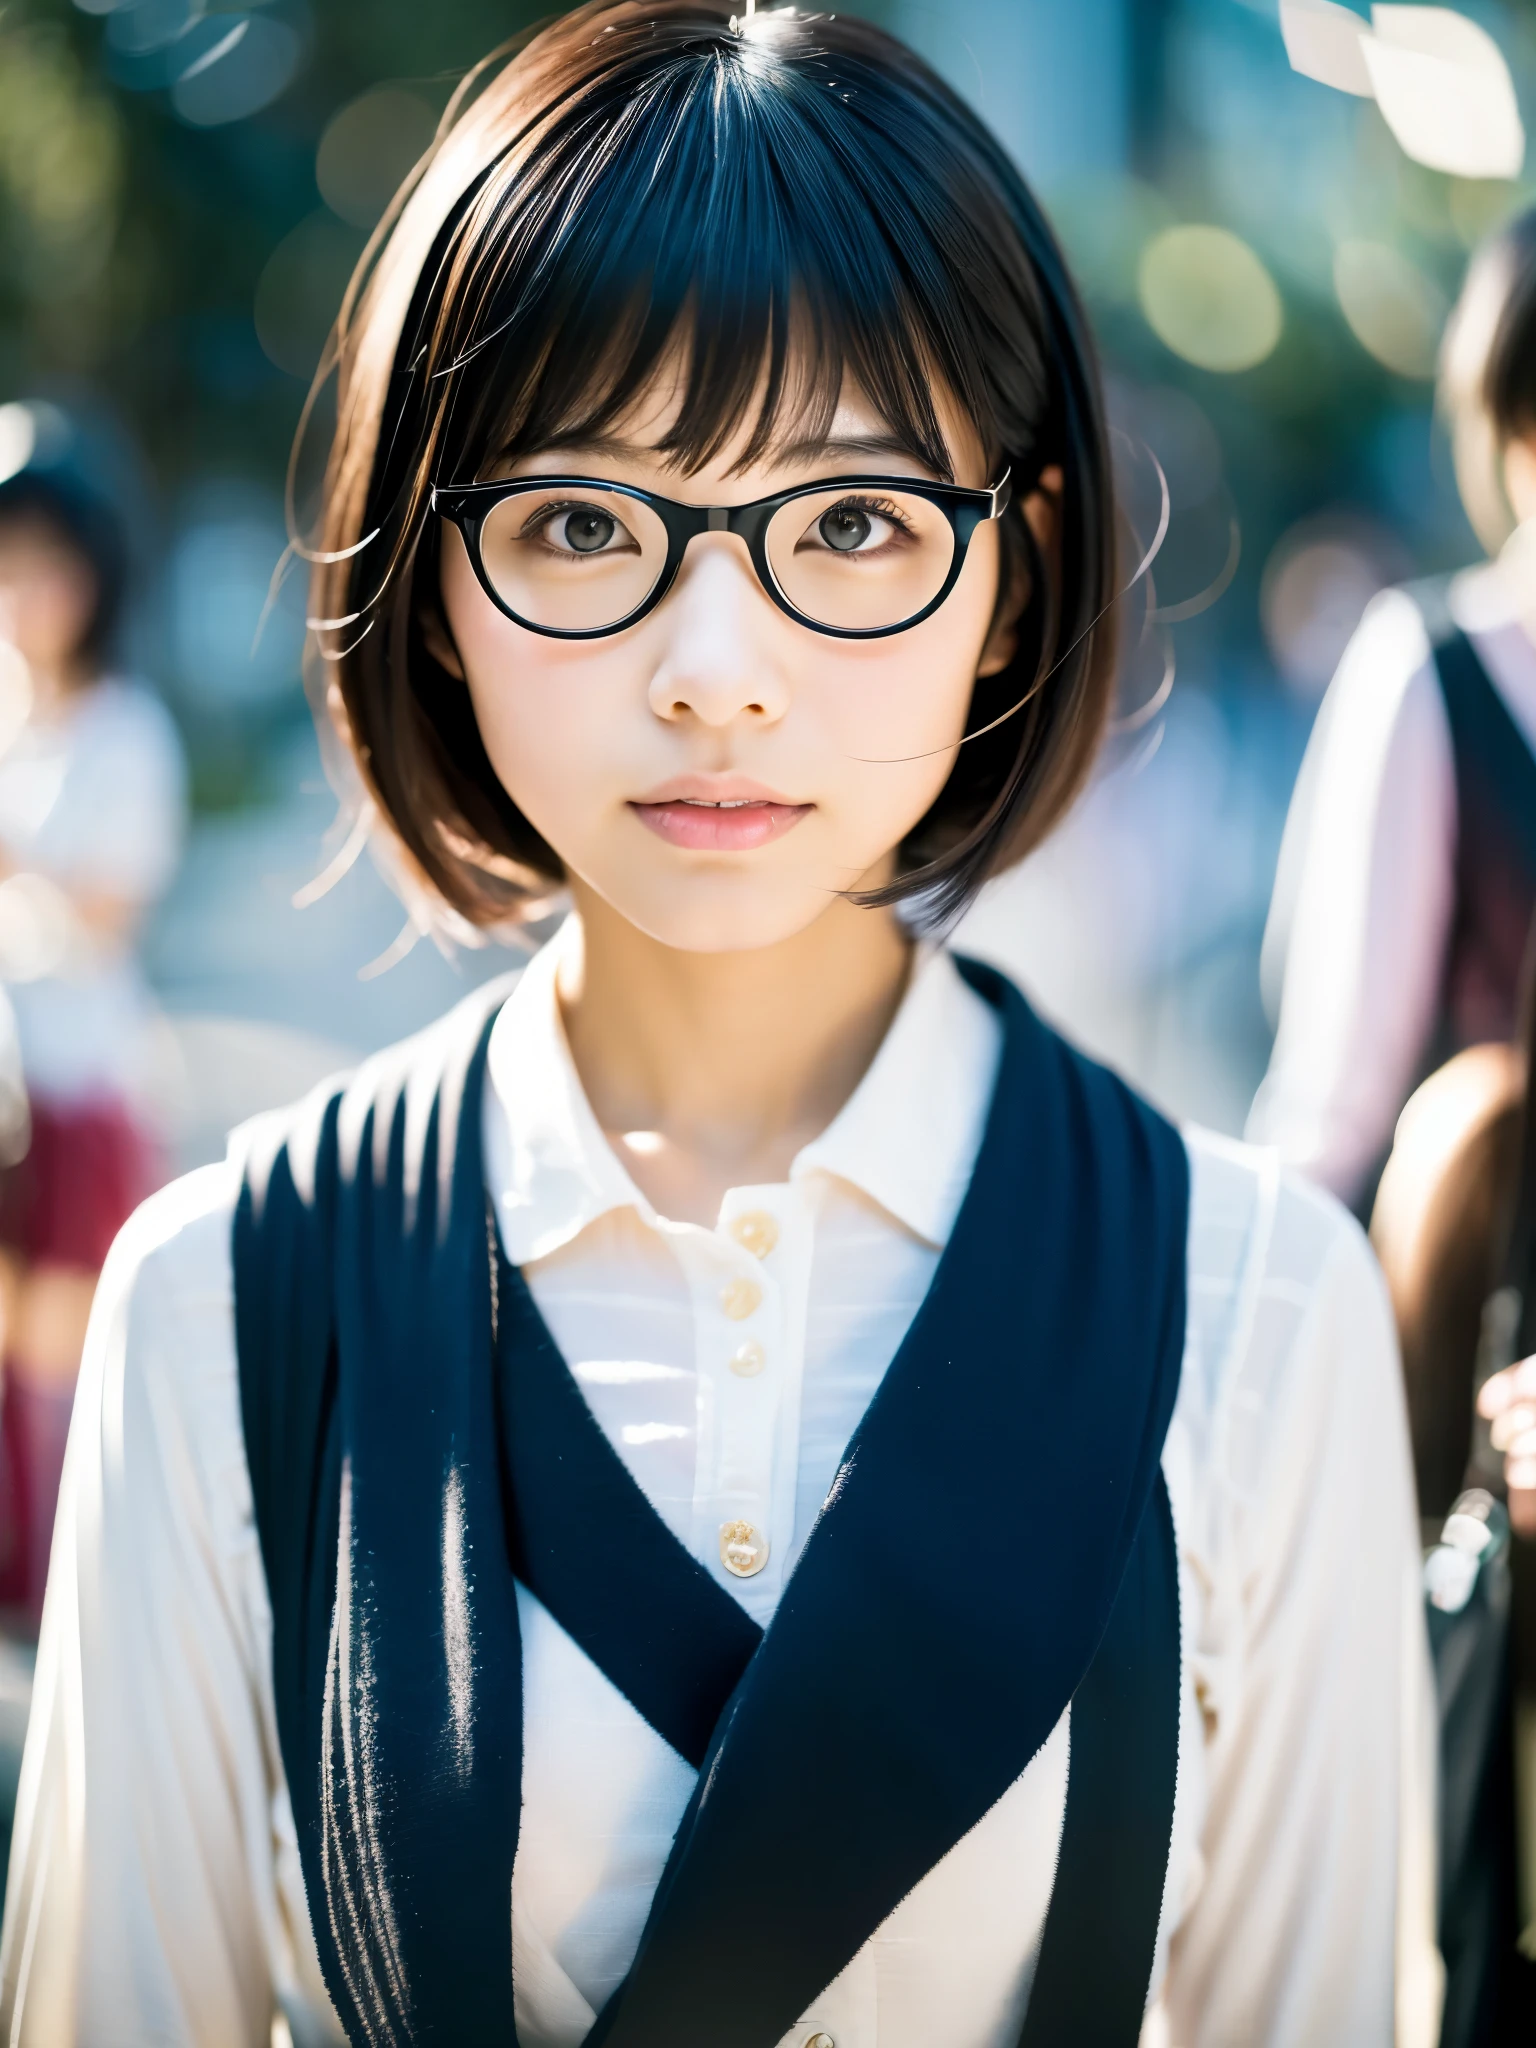 สาวเดี่ยวญี่ปุ่นแว่นตาทางปัญญาผิวสวย Taisho โรแมนติกเสื้อผ้าญี่ปุ่นบ๊อบผมดำญี่ปุ่นขาดเม็ดสีเรียว